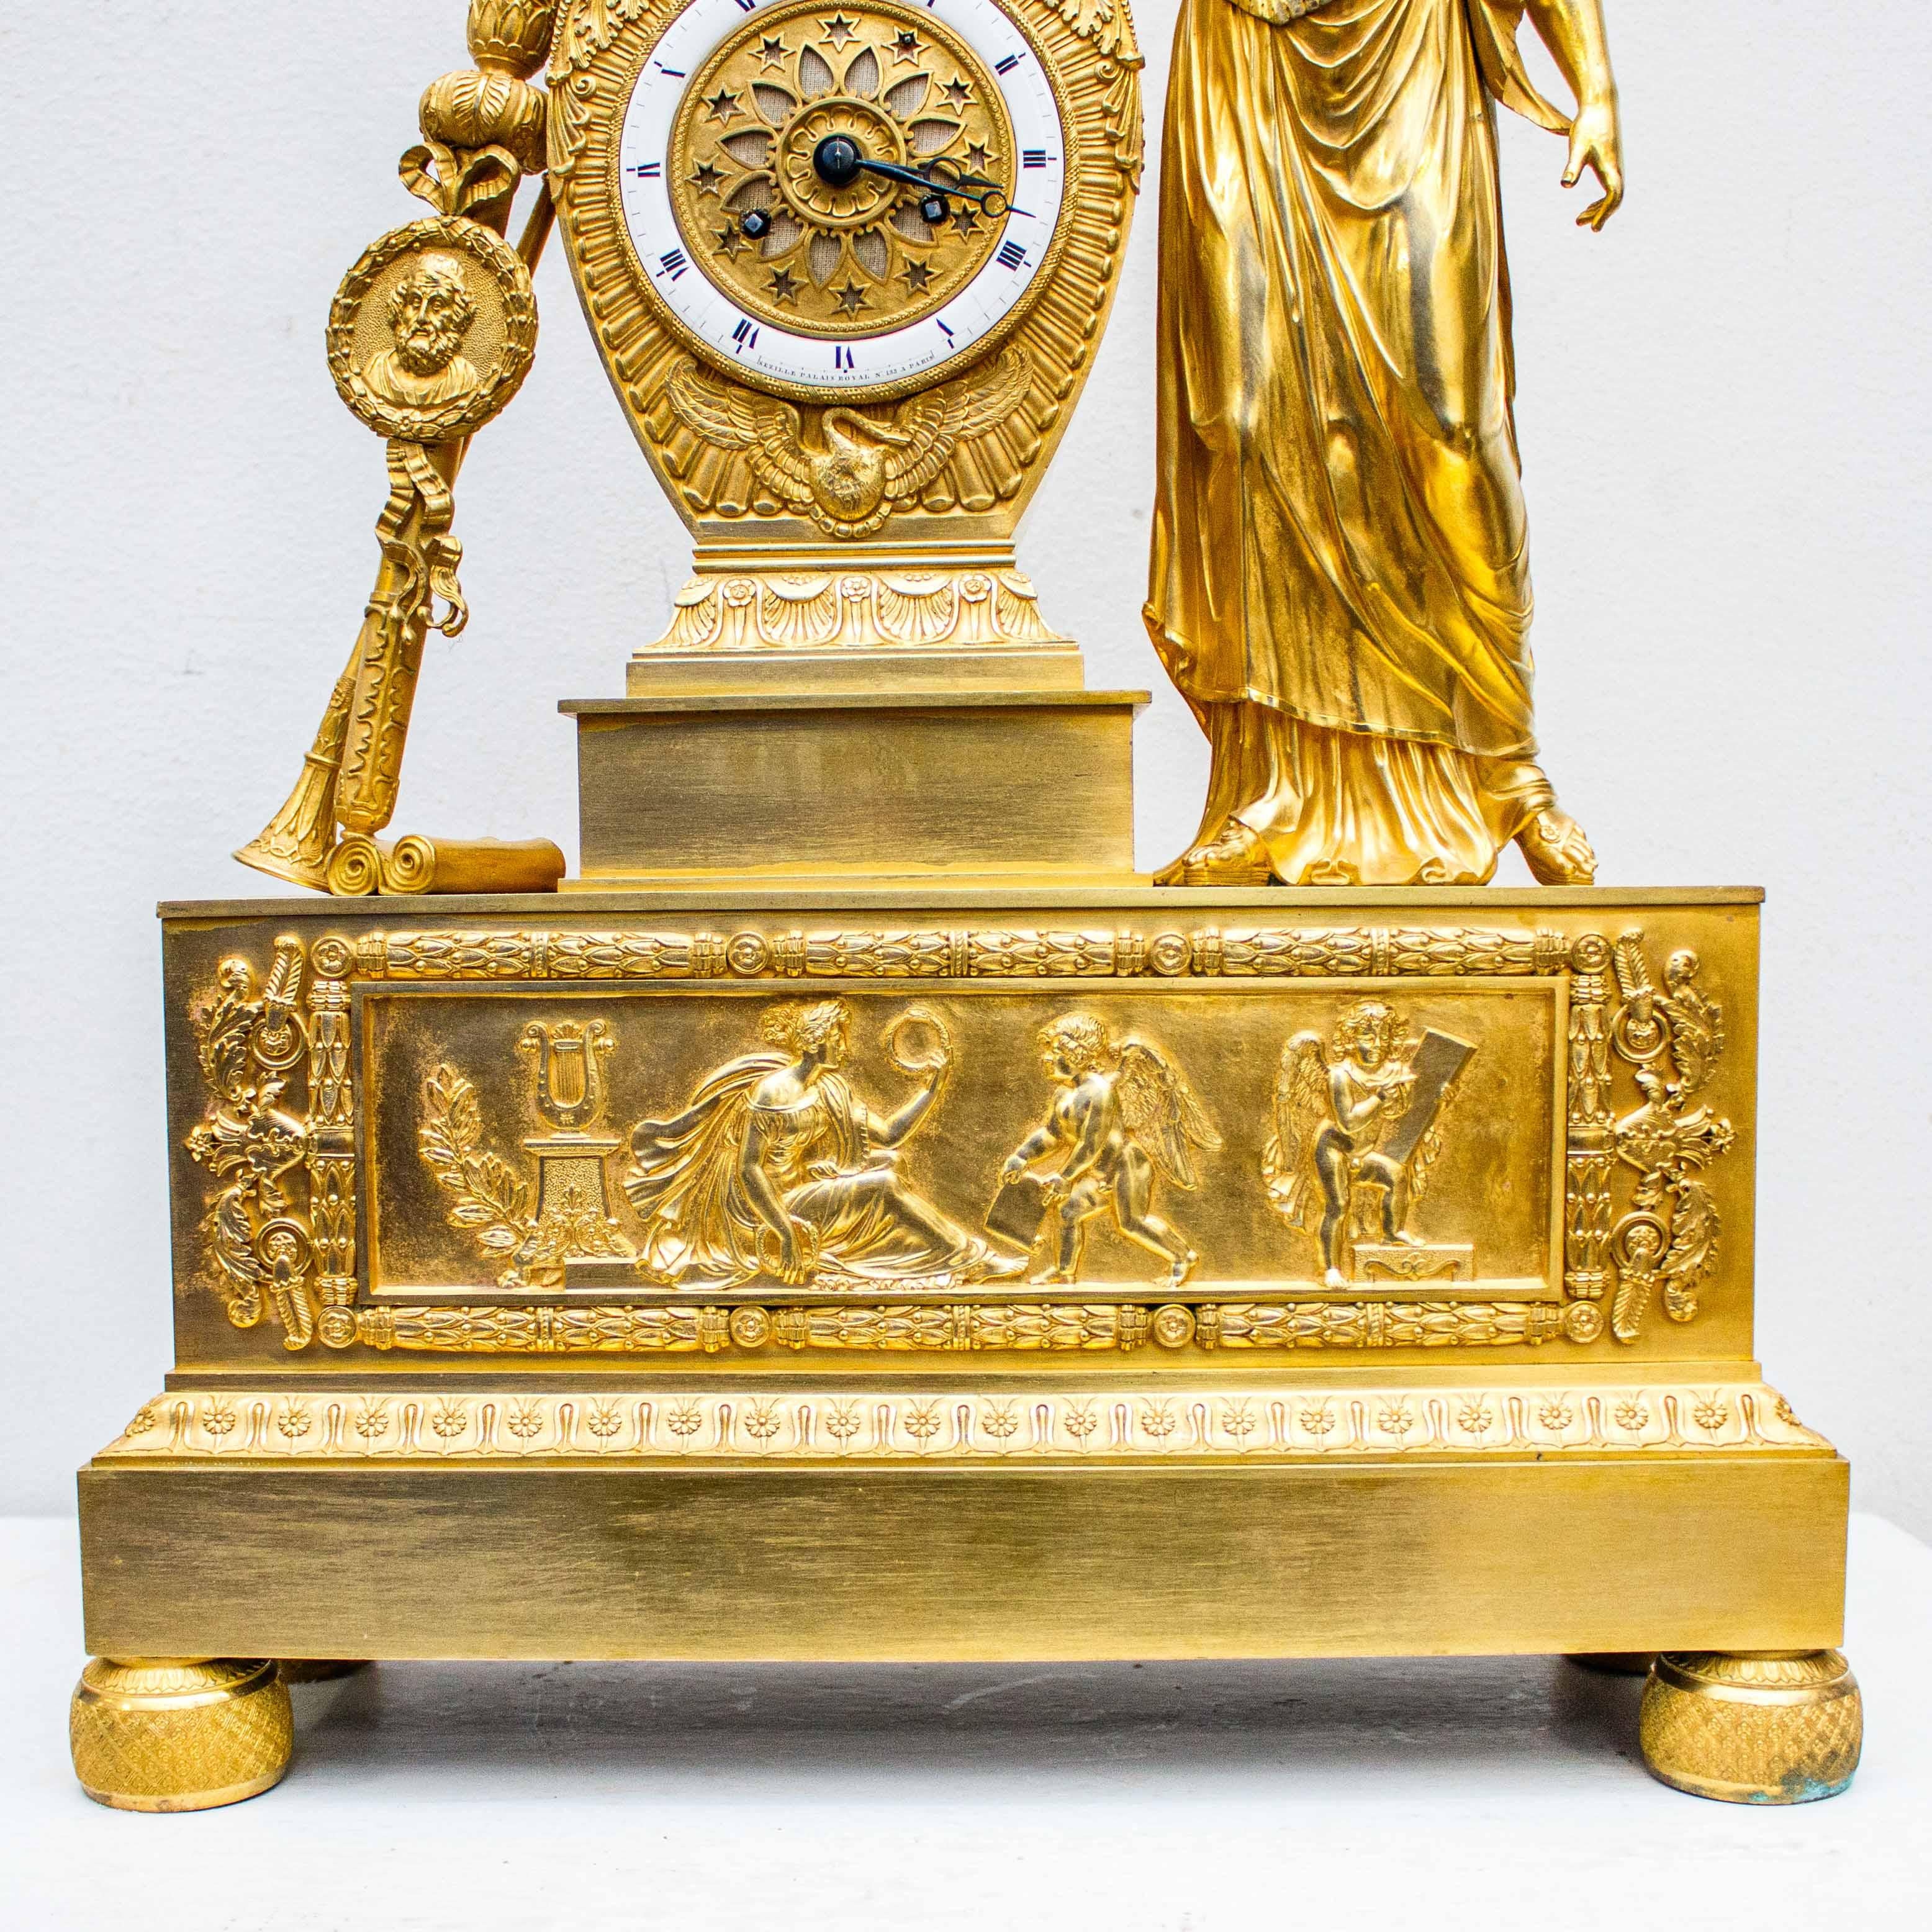 Frankreich, um 1810 -1820

Tischuhr mit Dienstmädchen

Quecksilber, vergoldete Bronze, Alt. cm 59,5 x 40,5 x 13

Signiert im Quadranten 